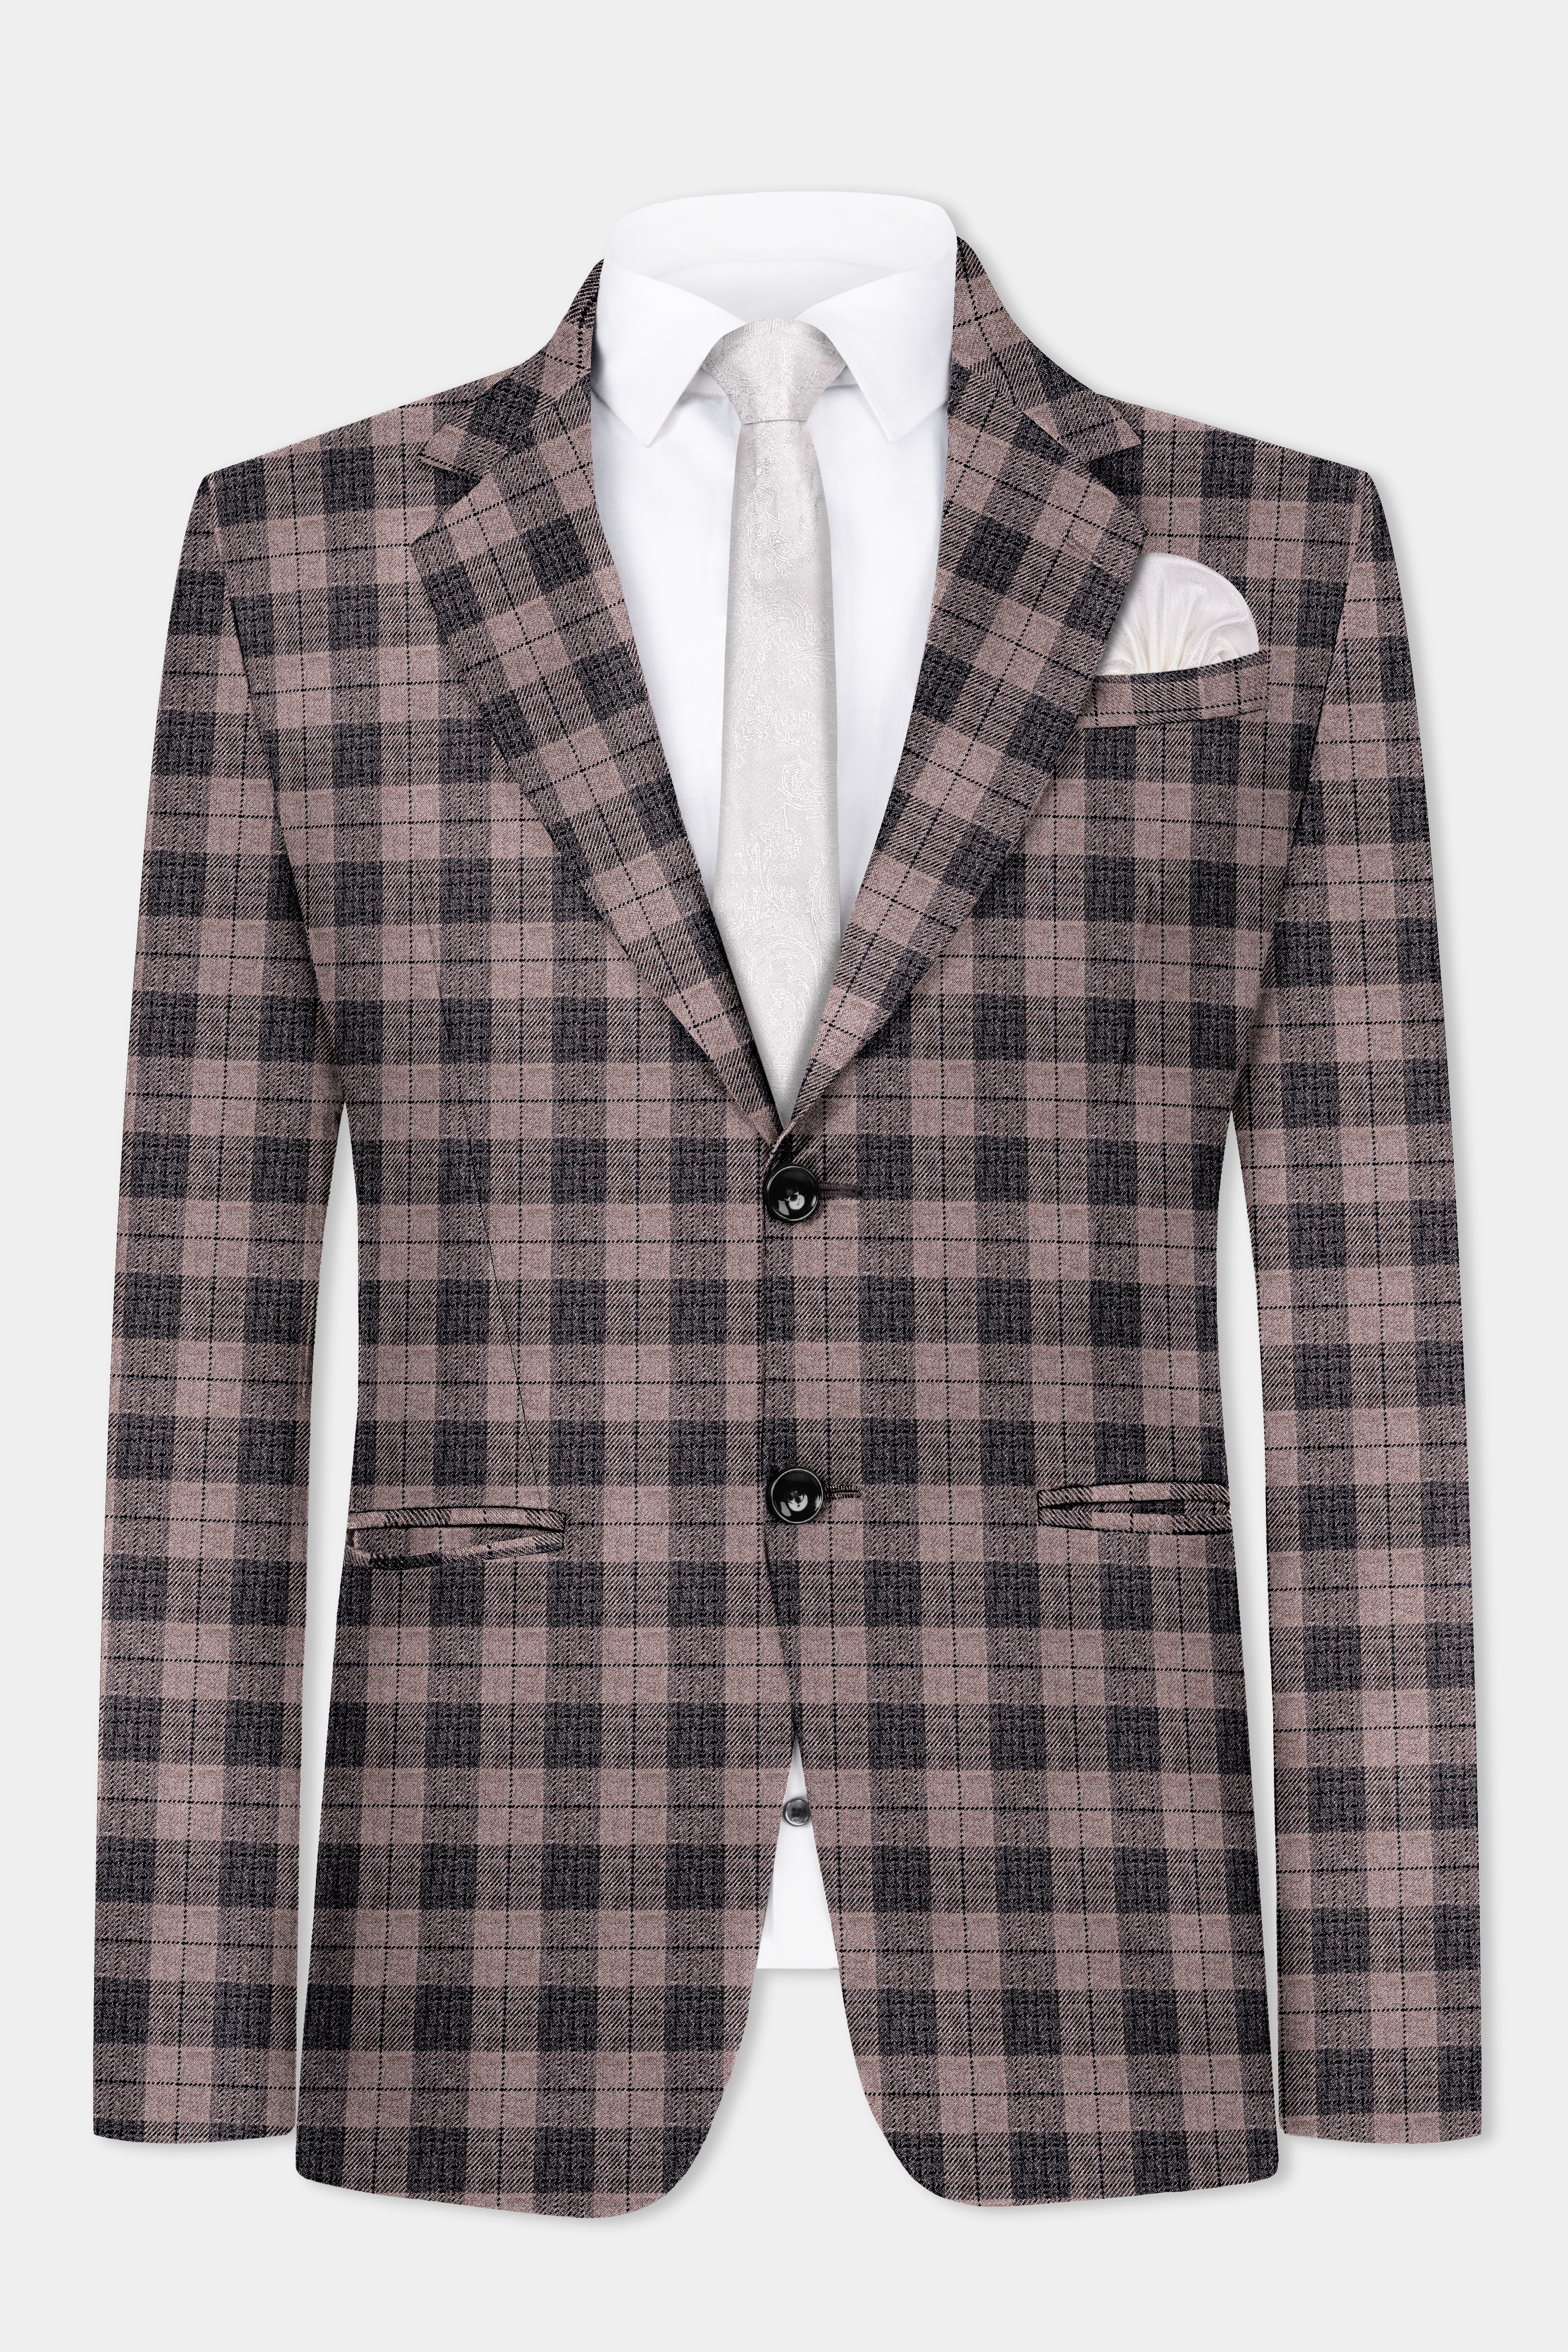 Vampire Brown Checks Plaid Tweed Suit